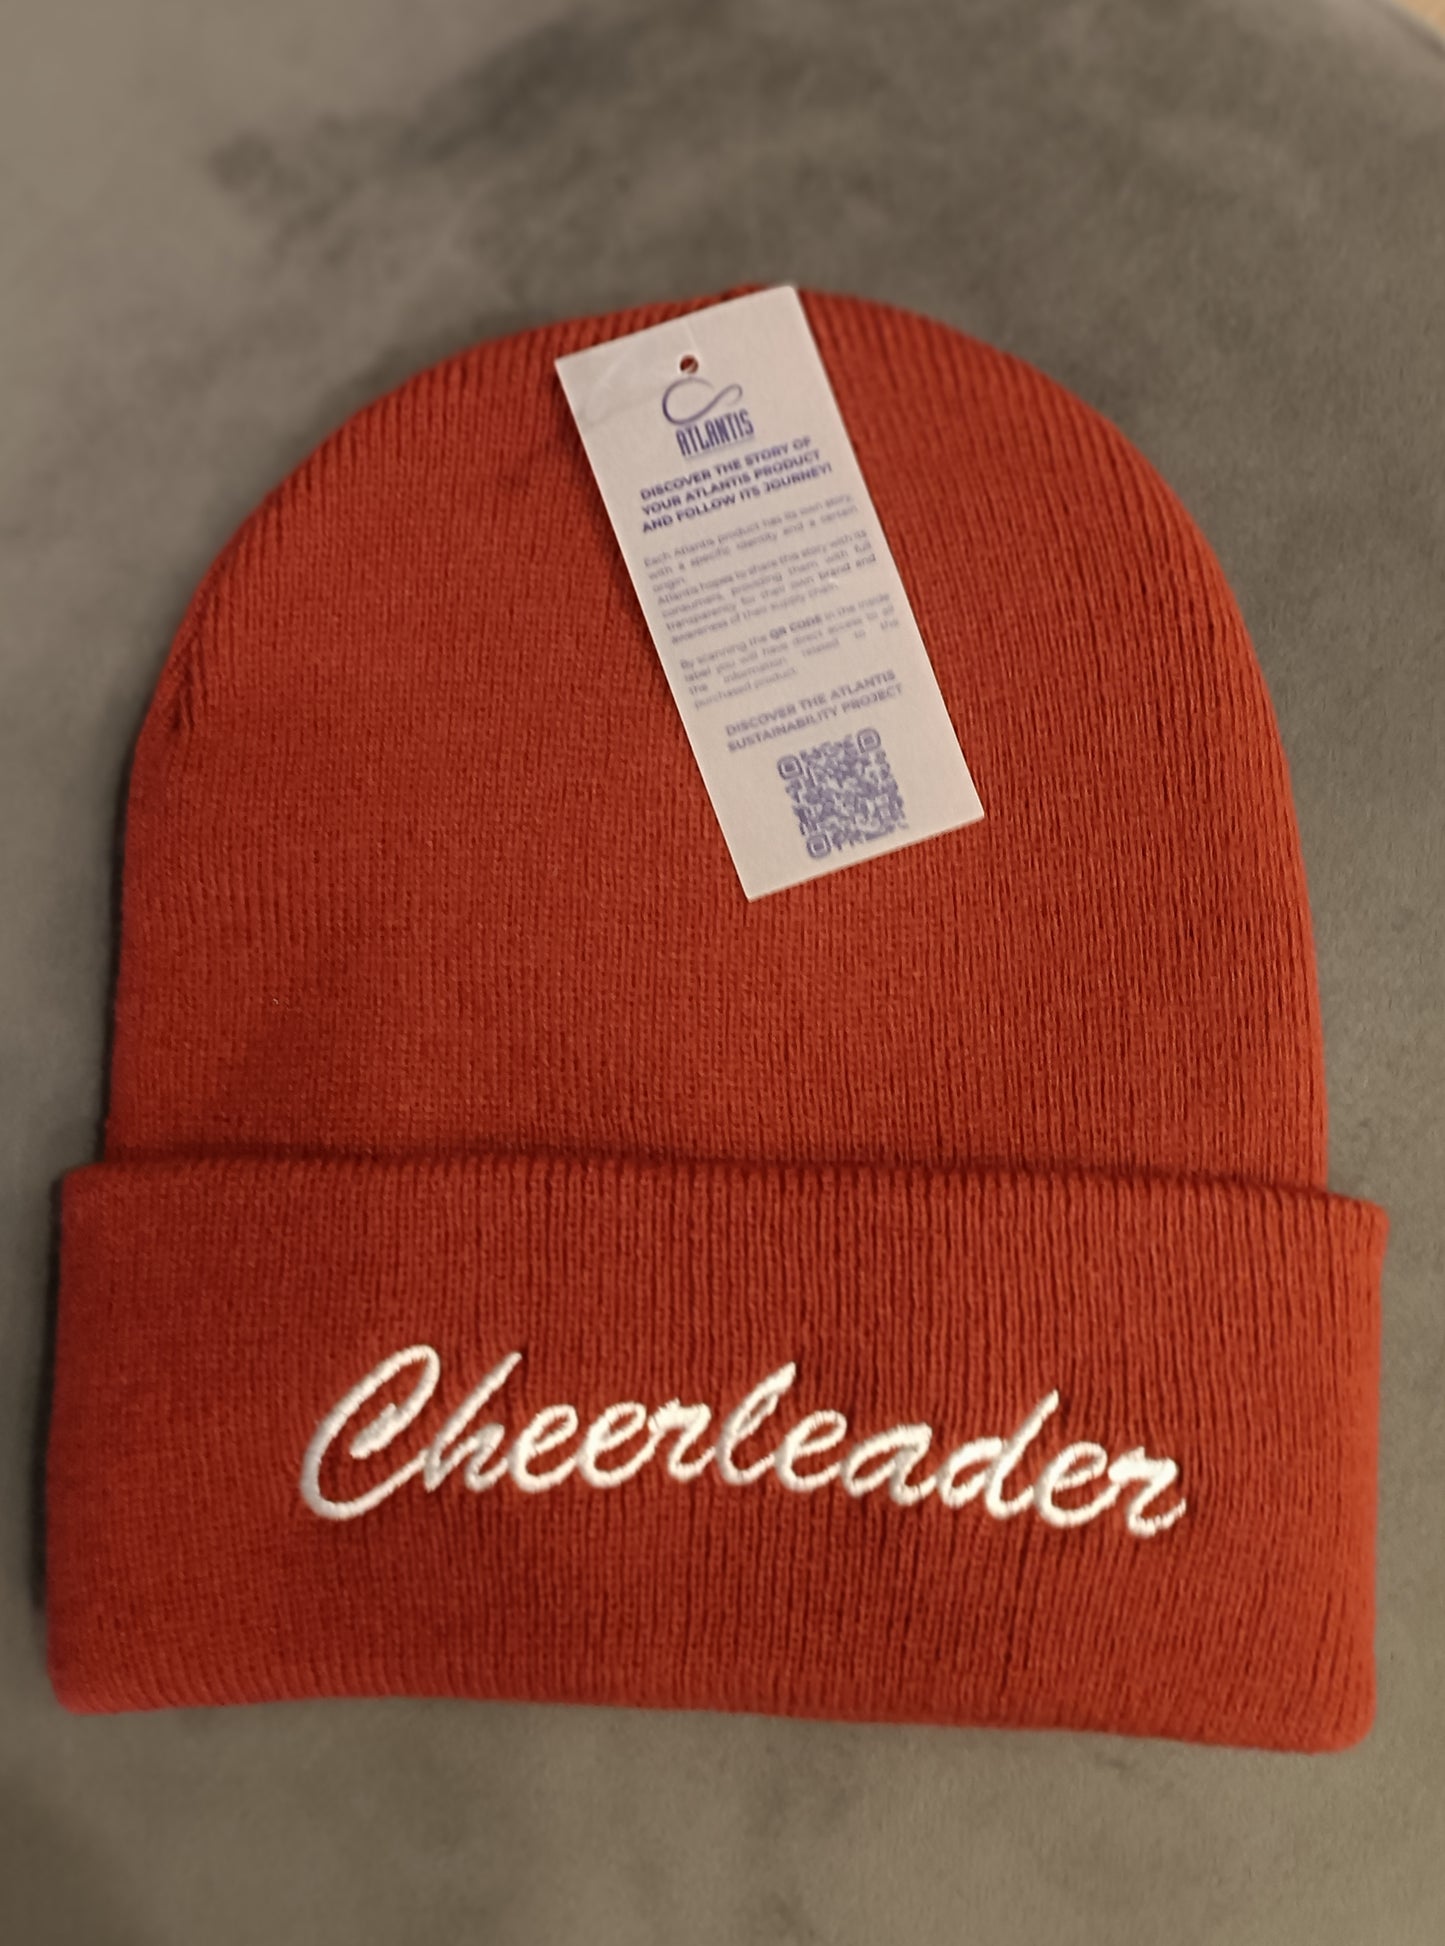 Cheerleader hood